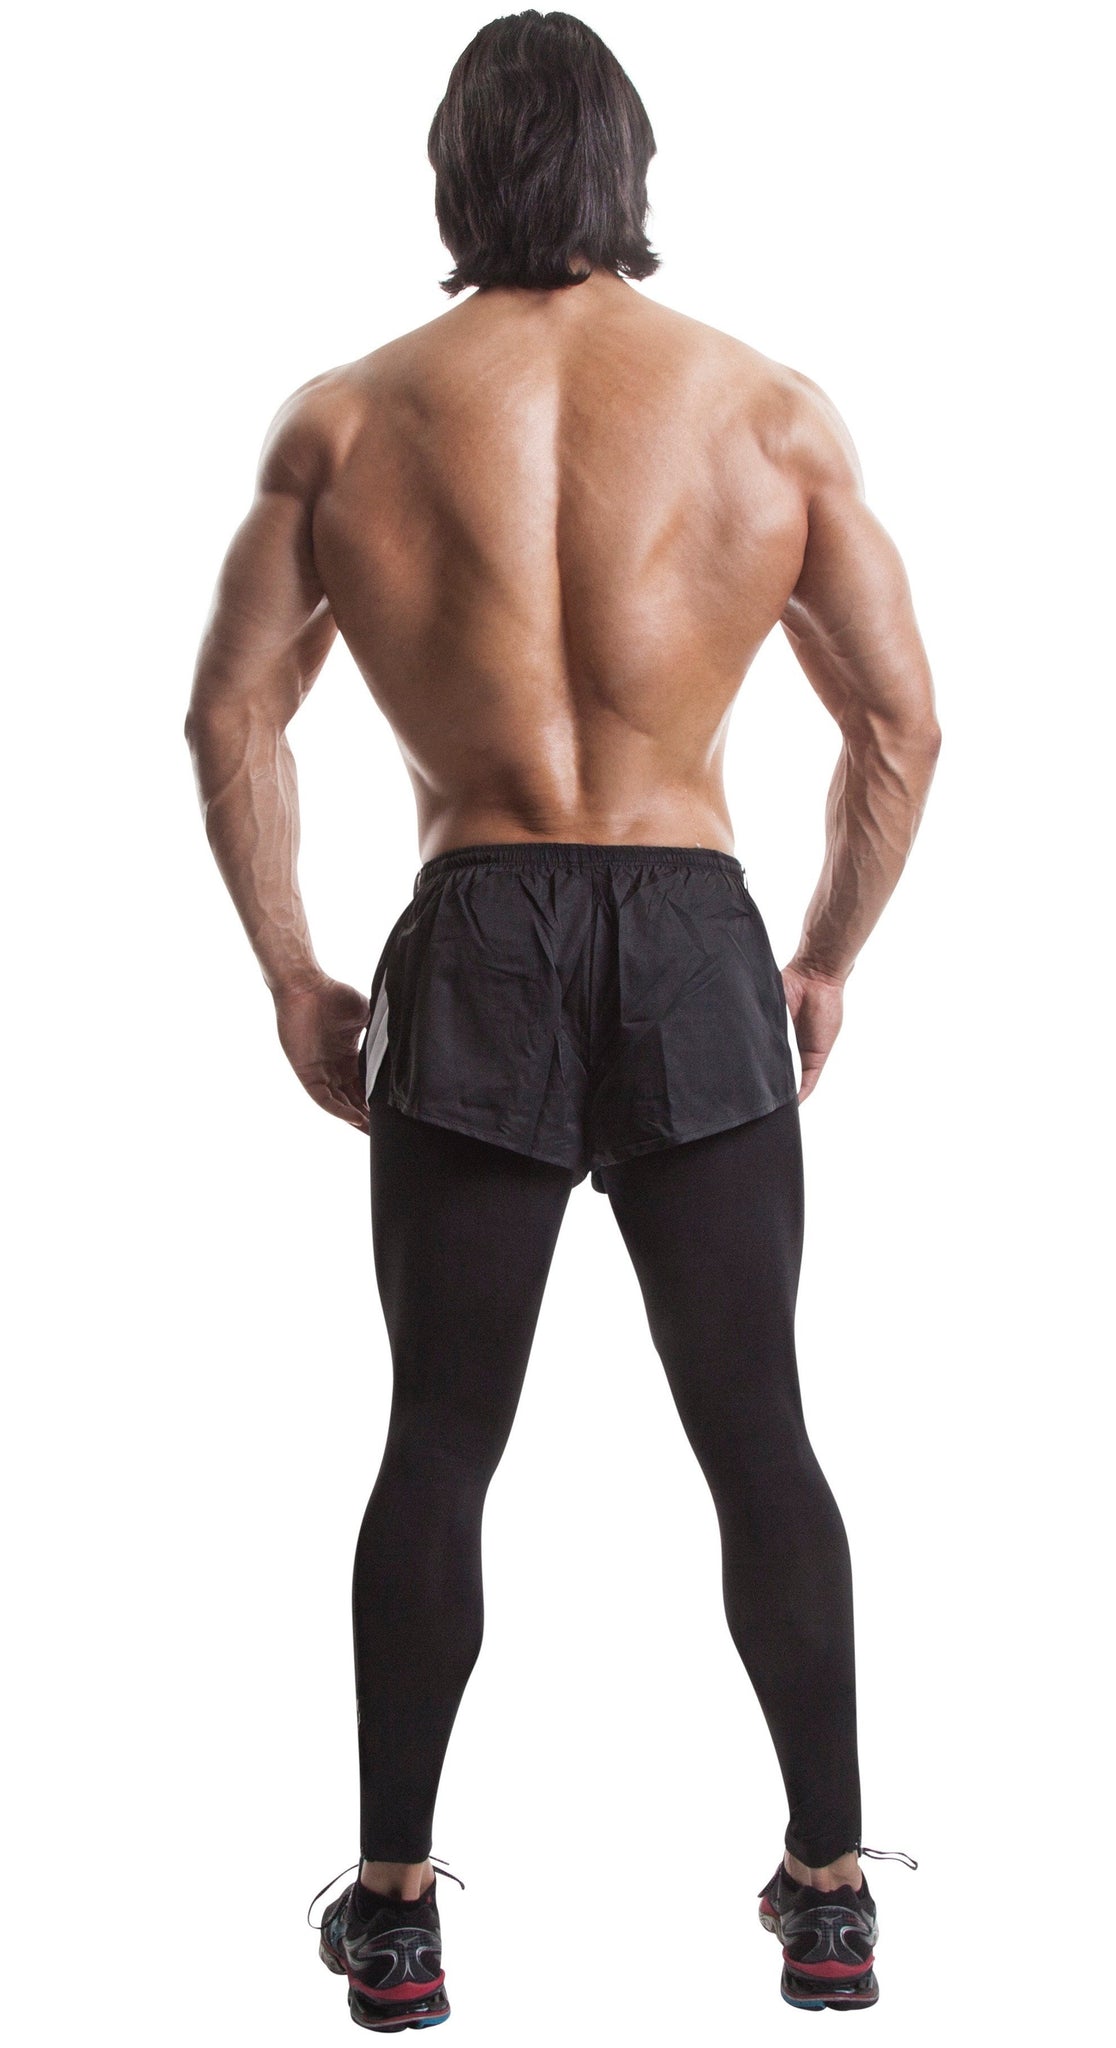 2-in-1 Leggings and Shorts(Black/white)-Nylon/elastin - DEMIG